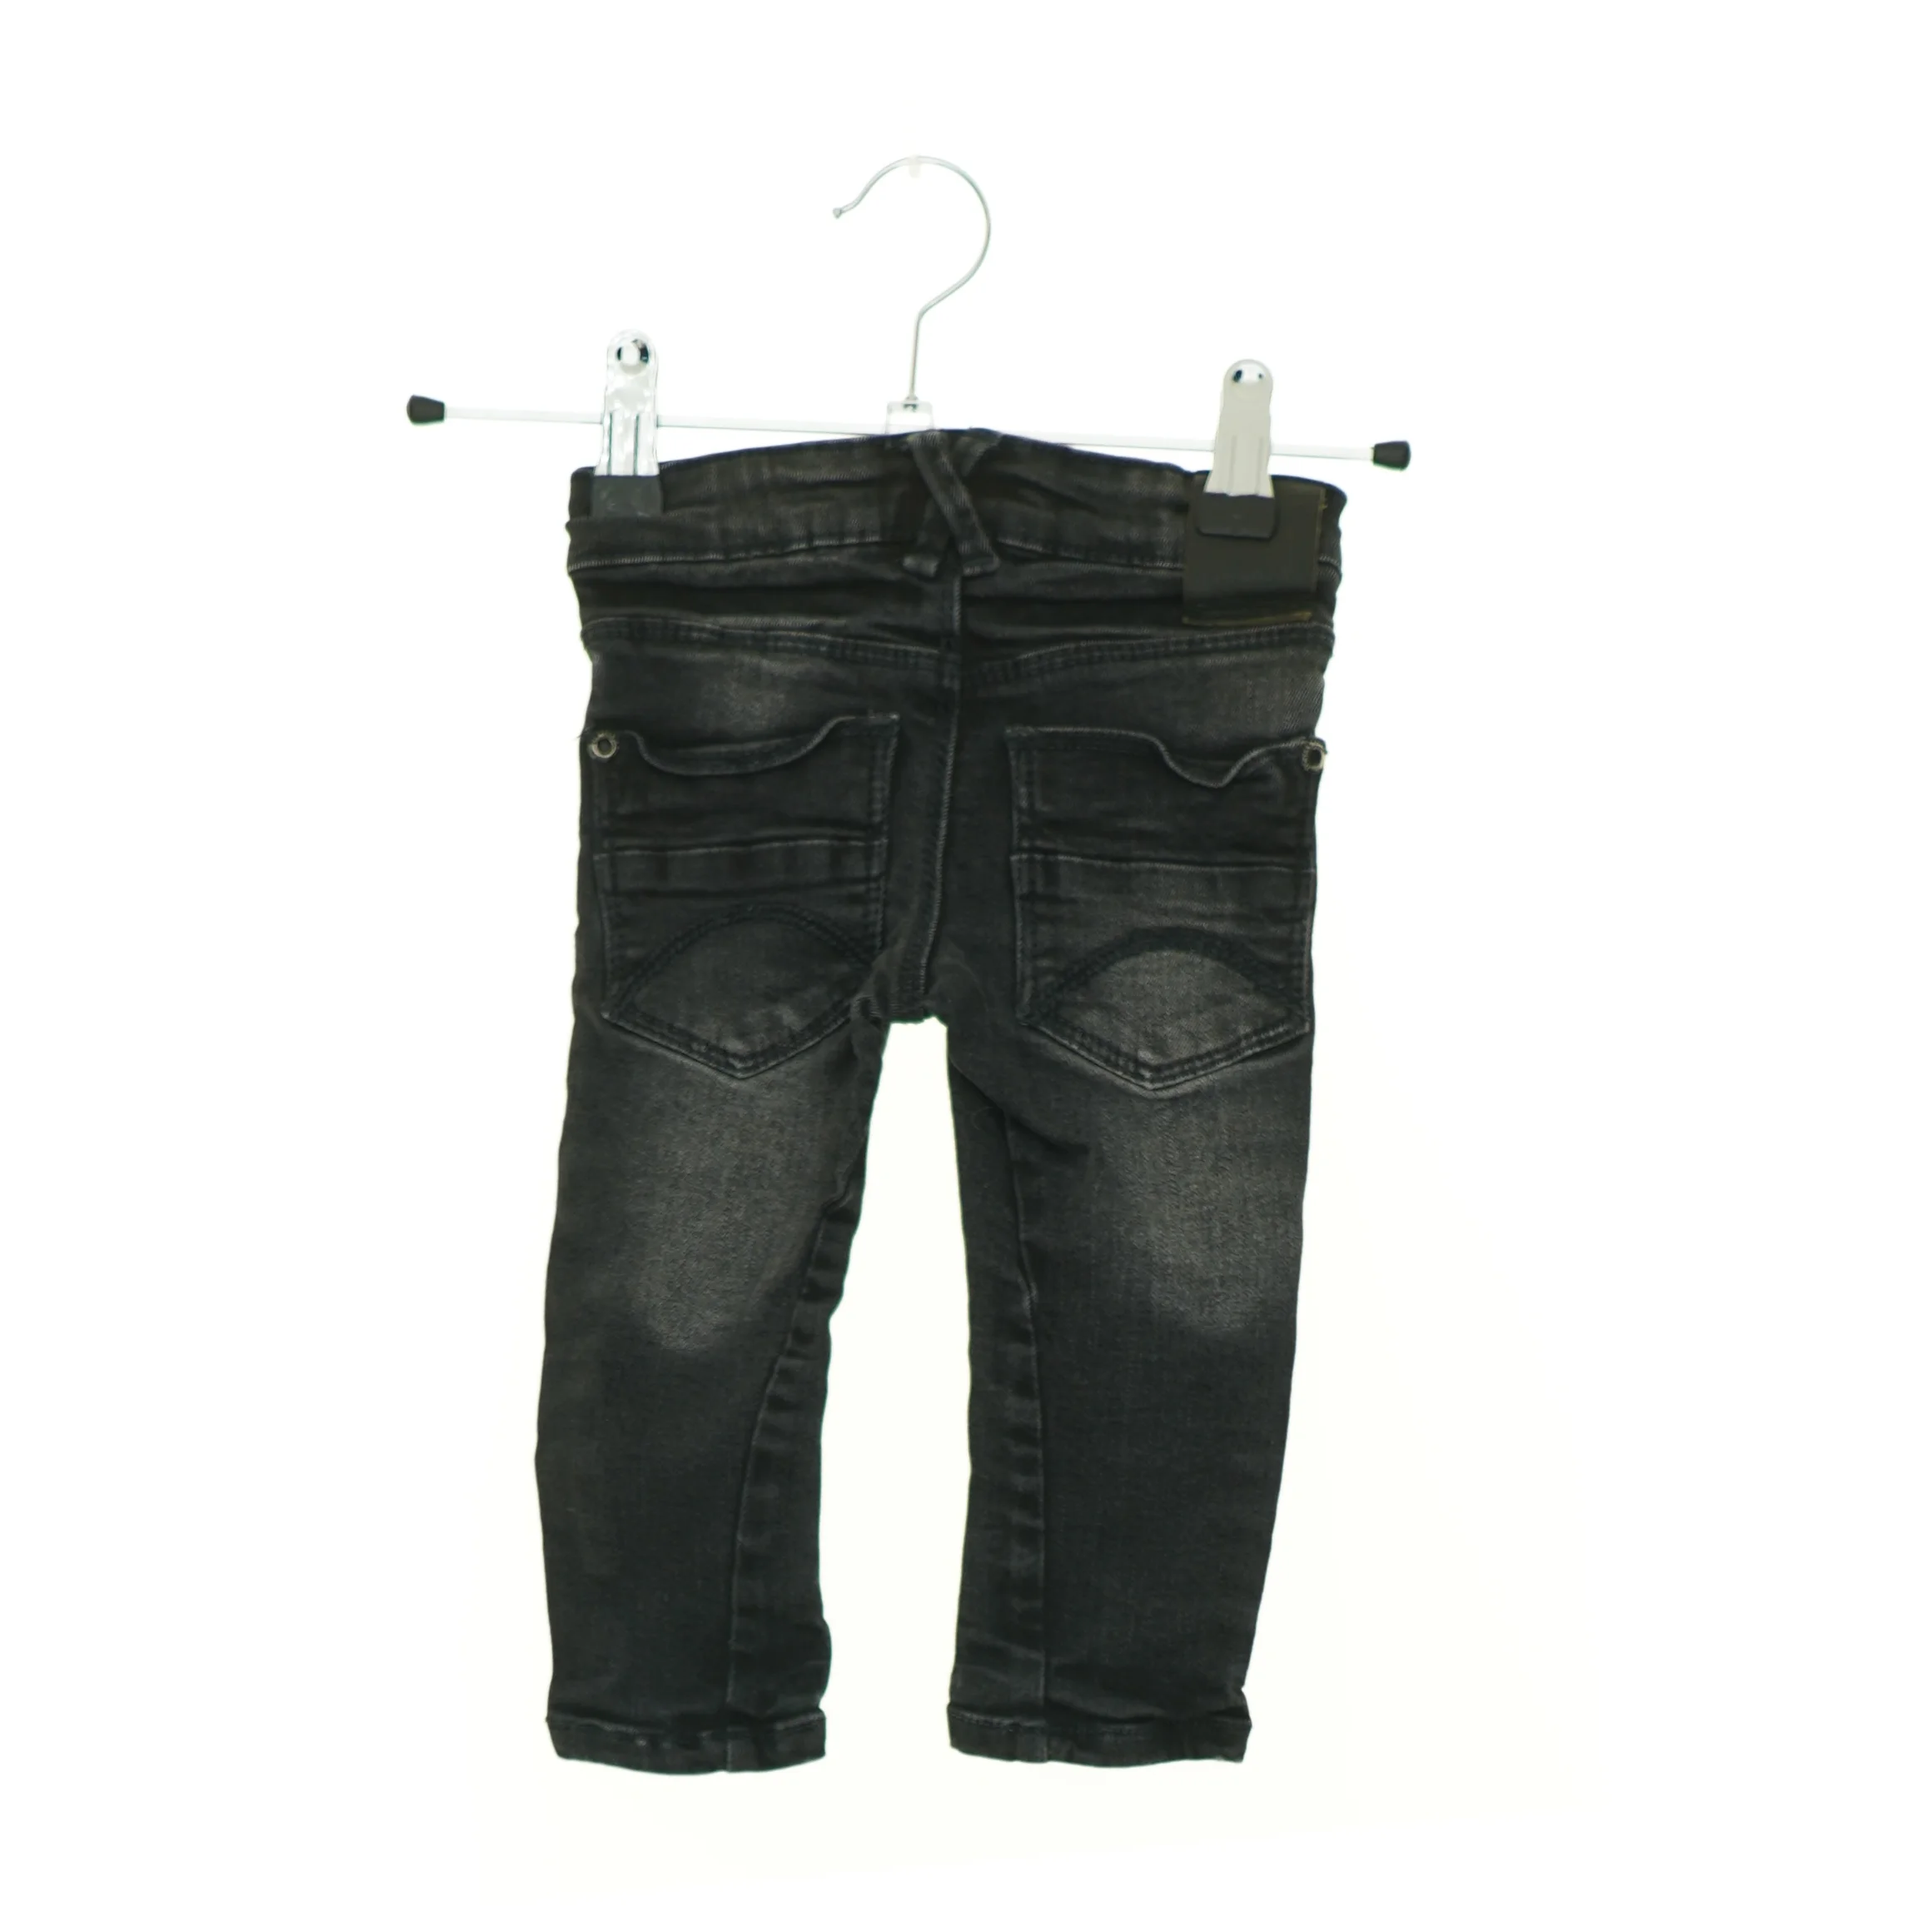 Ekstrem Continental på Jeans (str. 74 cm) | Orderly.shop